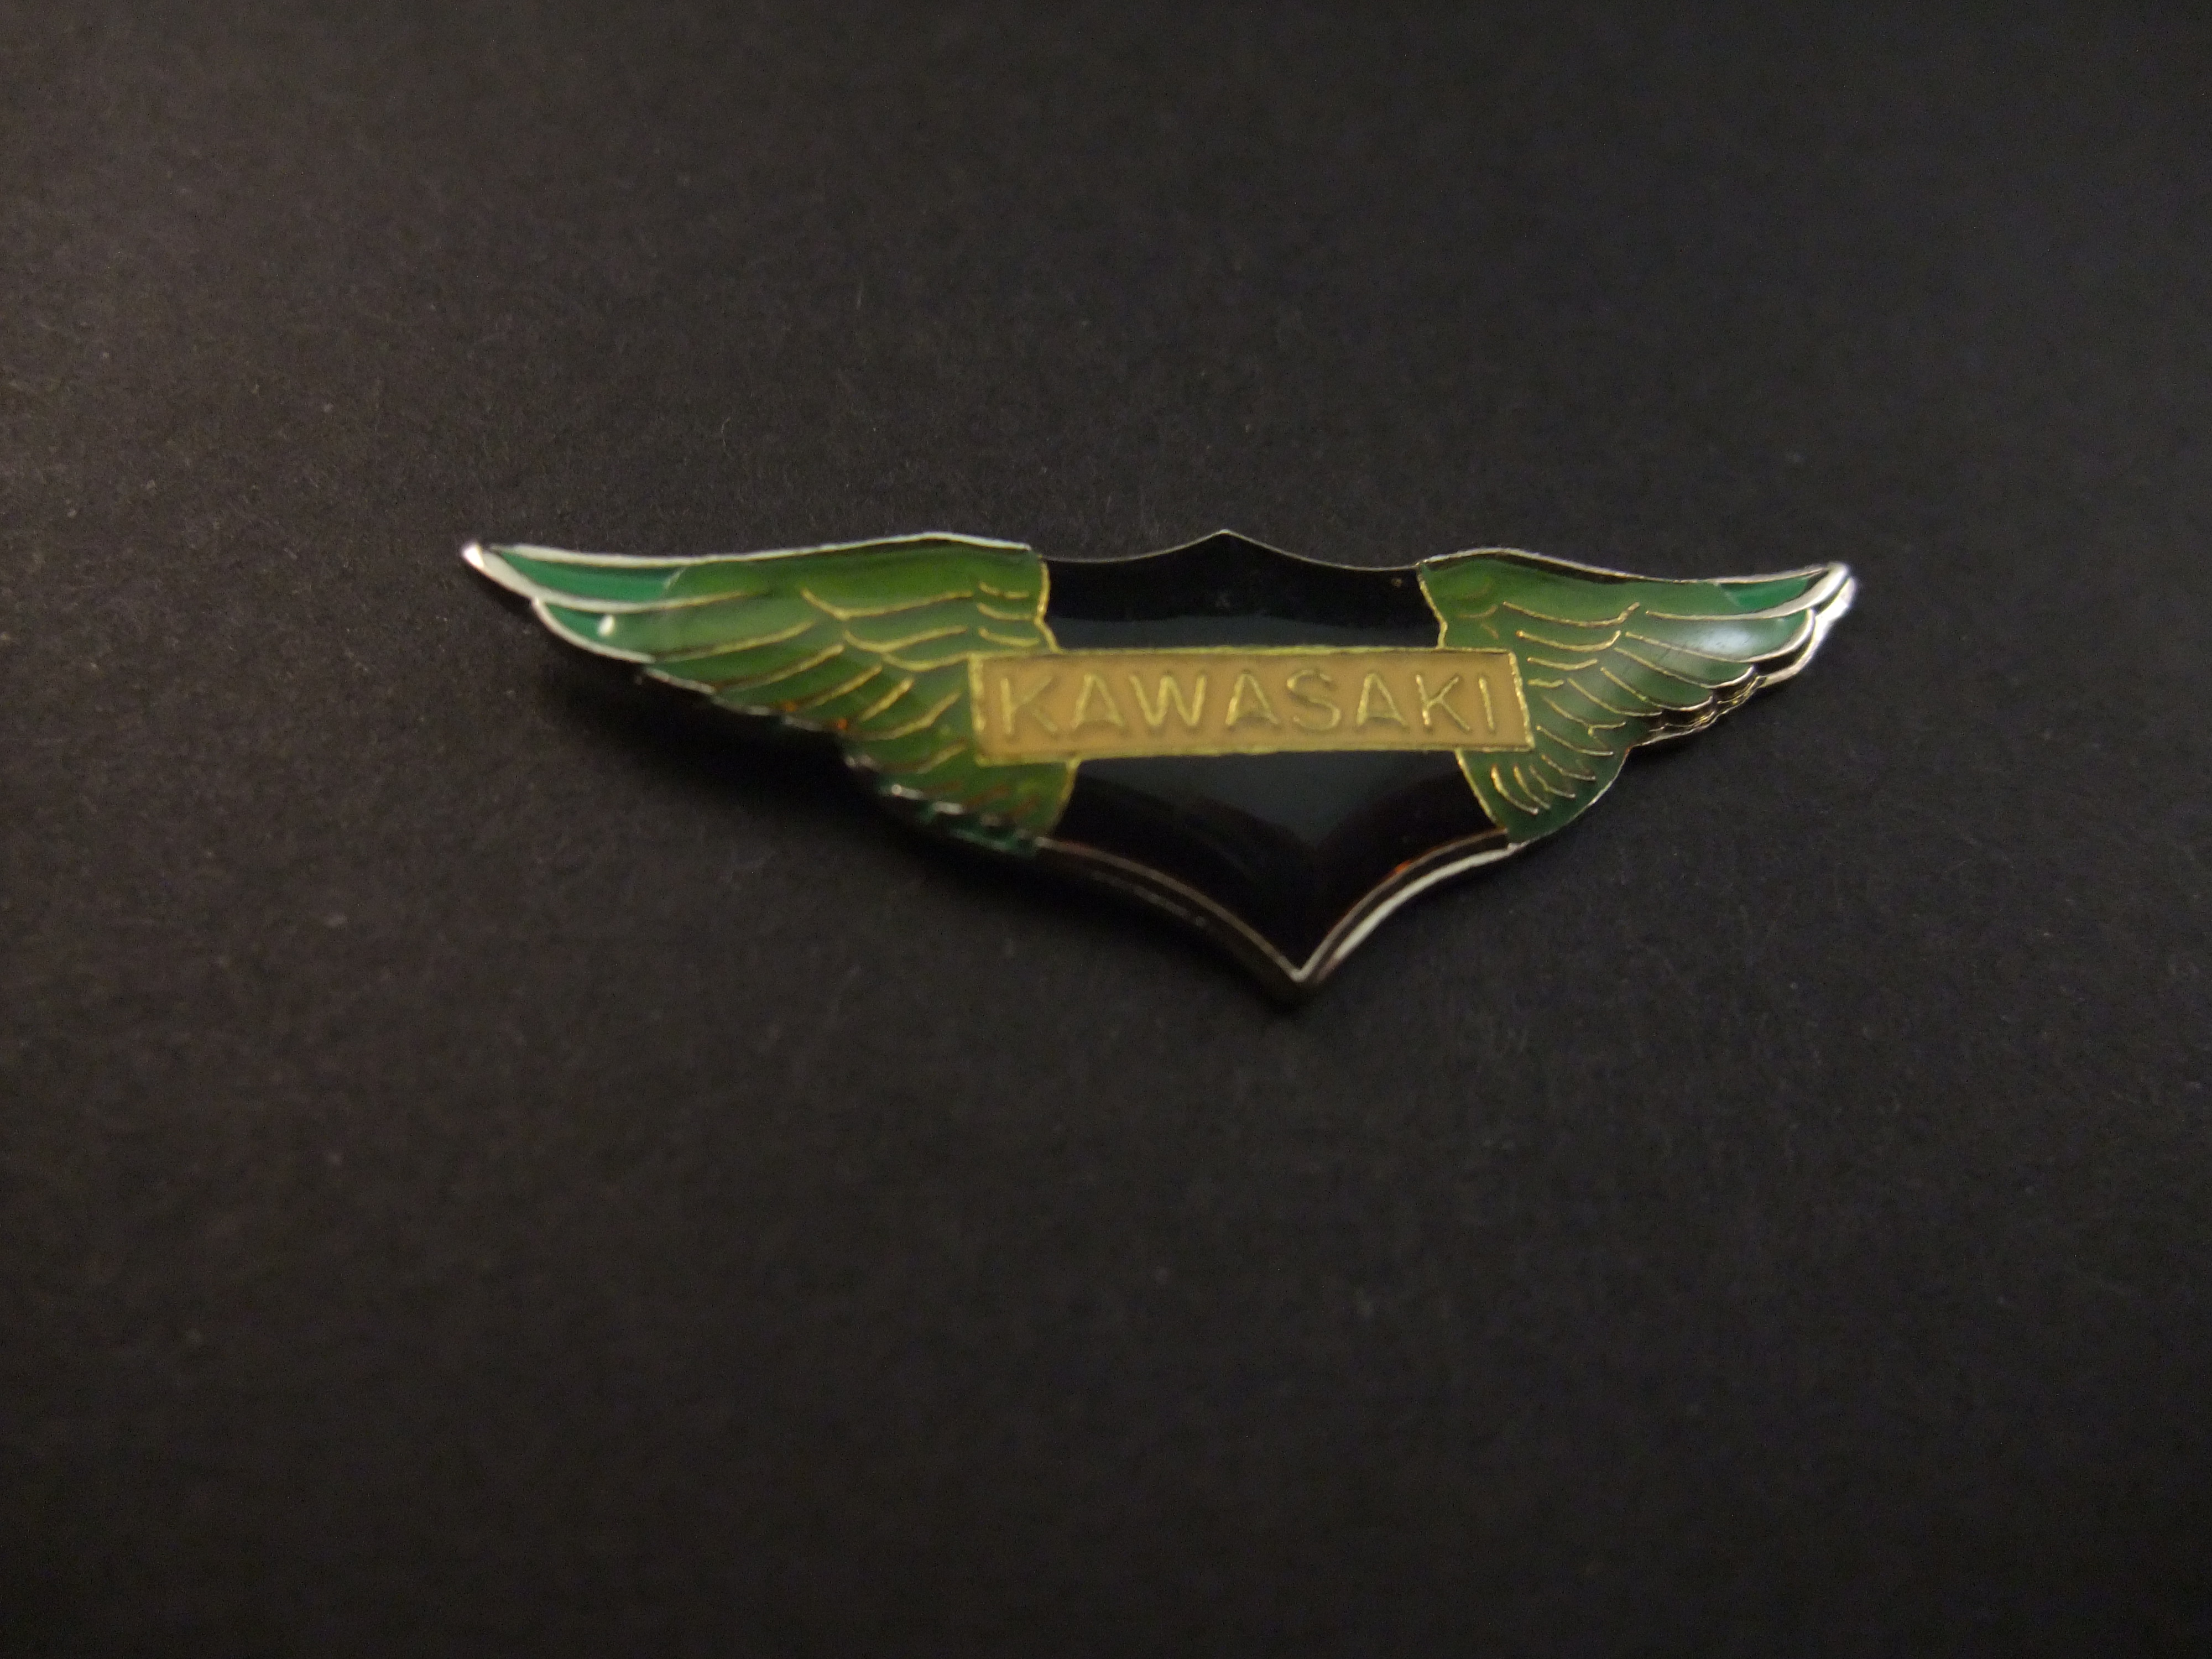 Kawasaki motor logo groene Wing